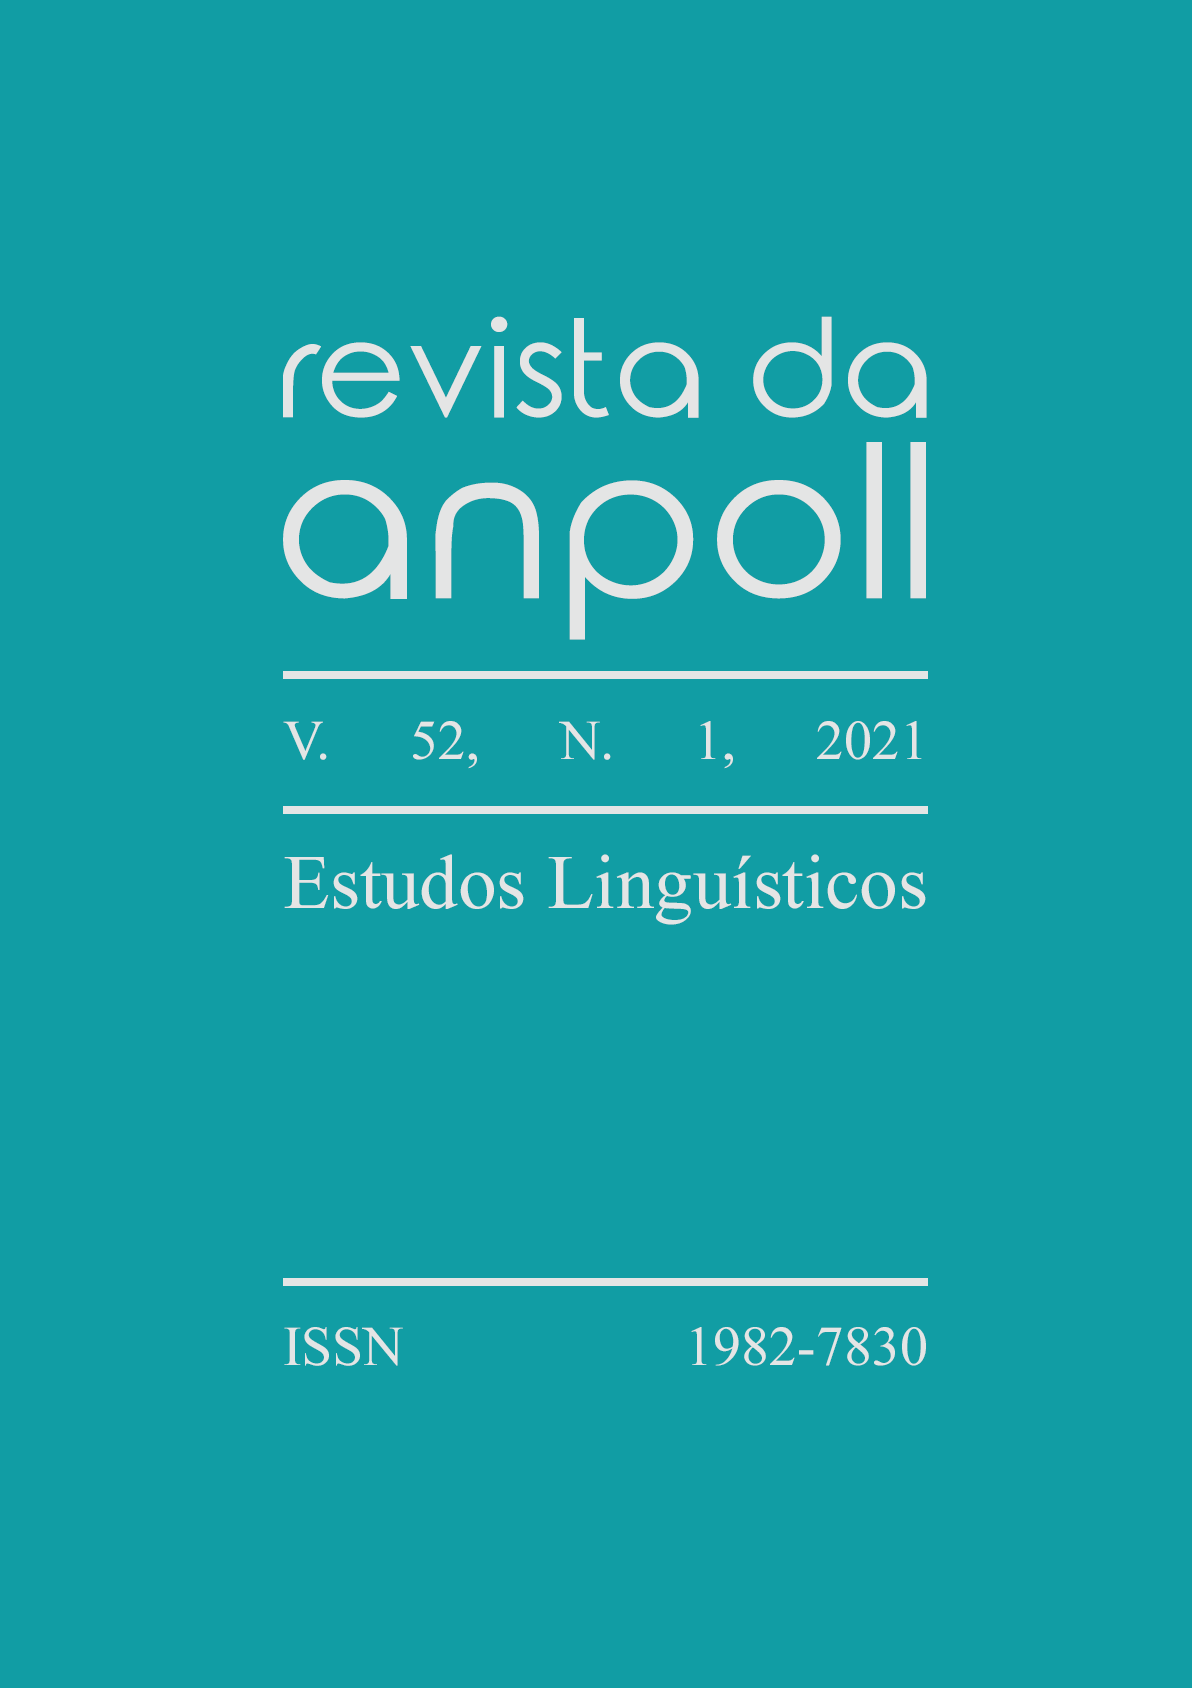 Capa do v. 52, n. 1, 2021, da Revista da Anpoll, dedicado aos Estudos Linguísticos.